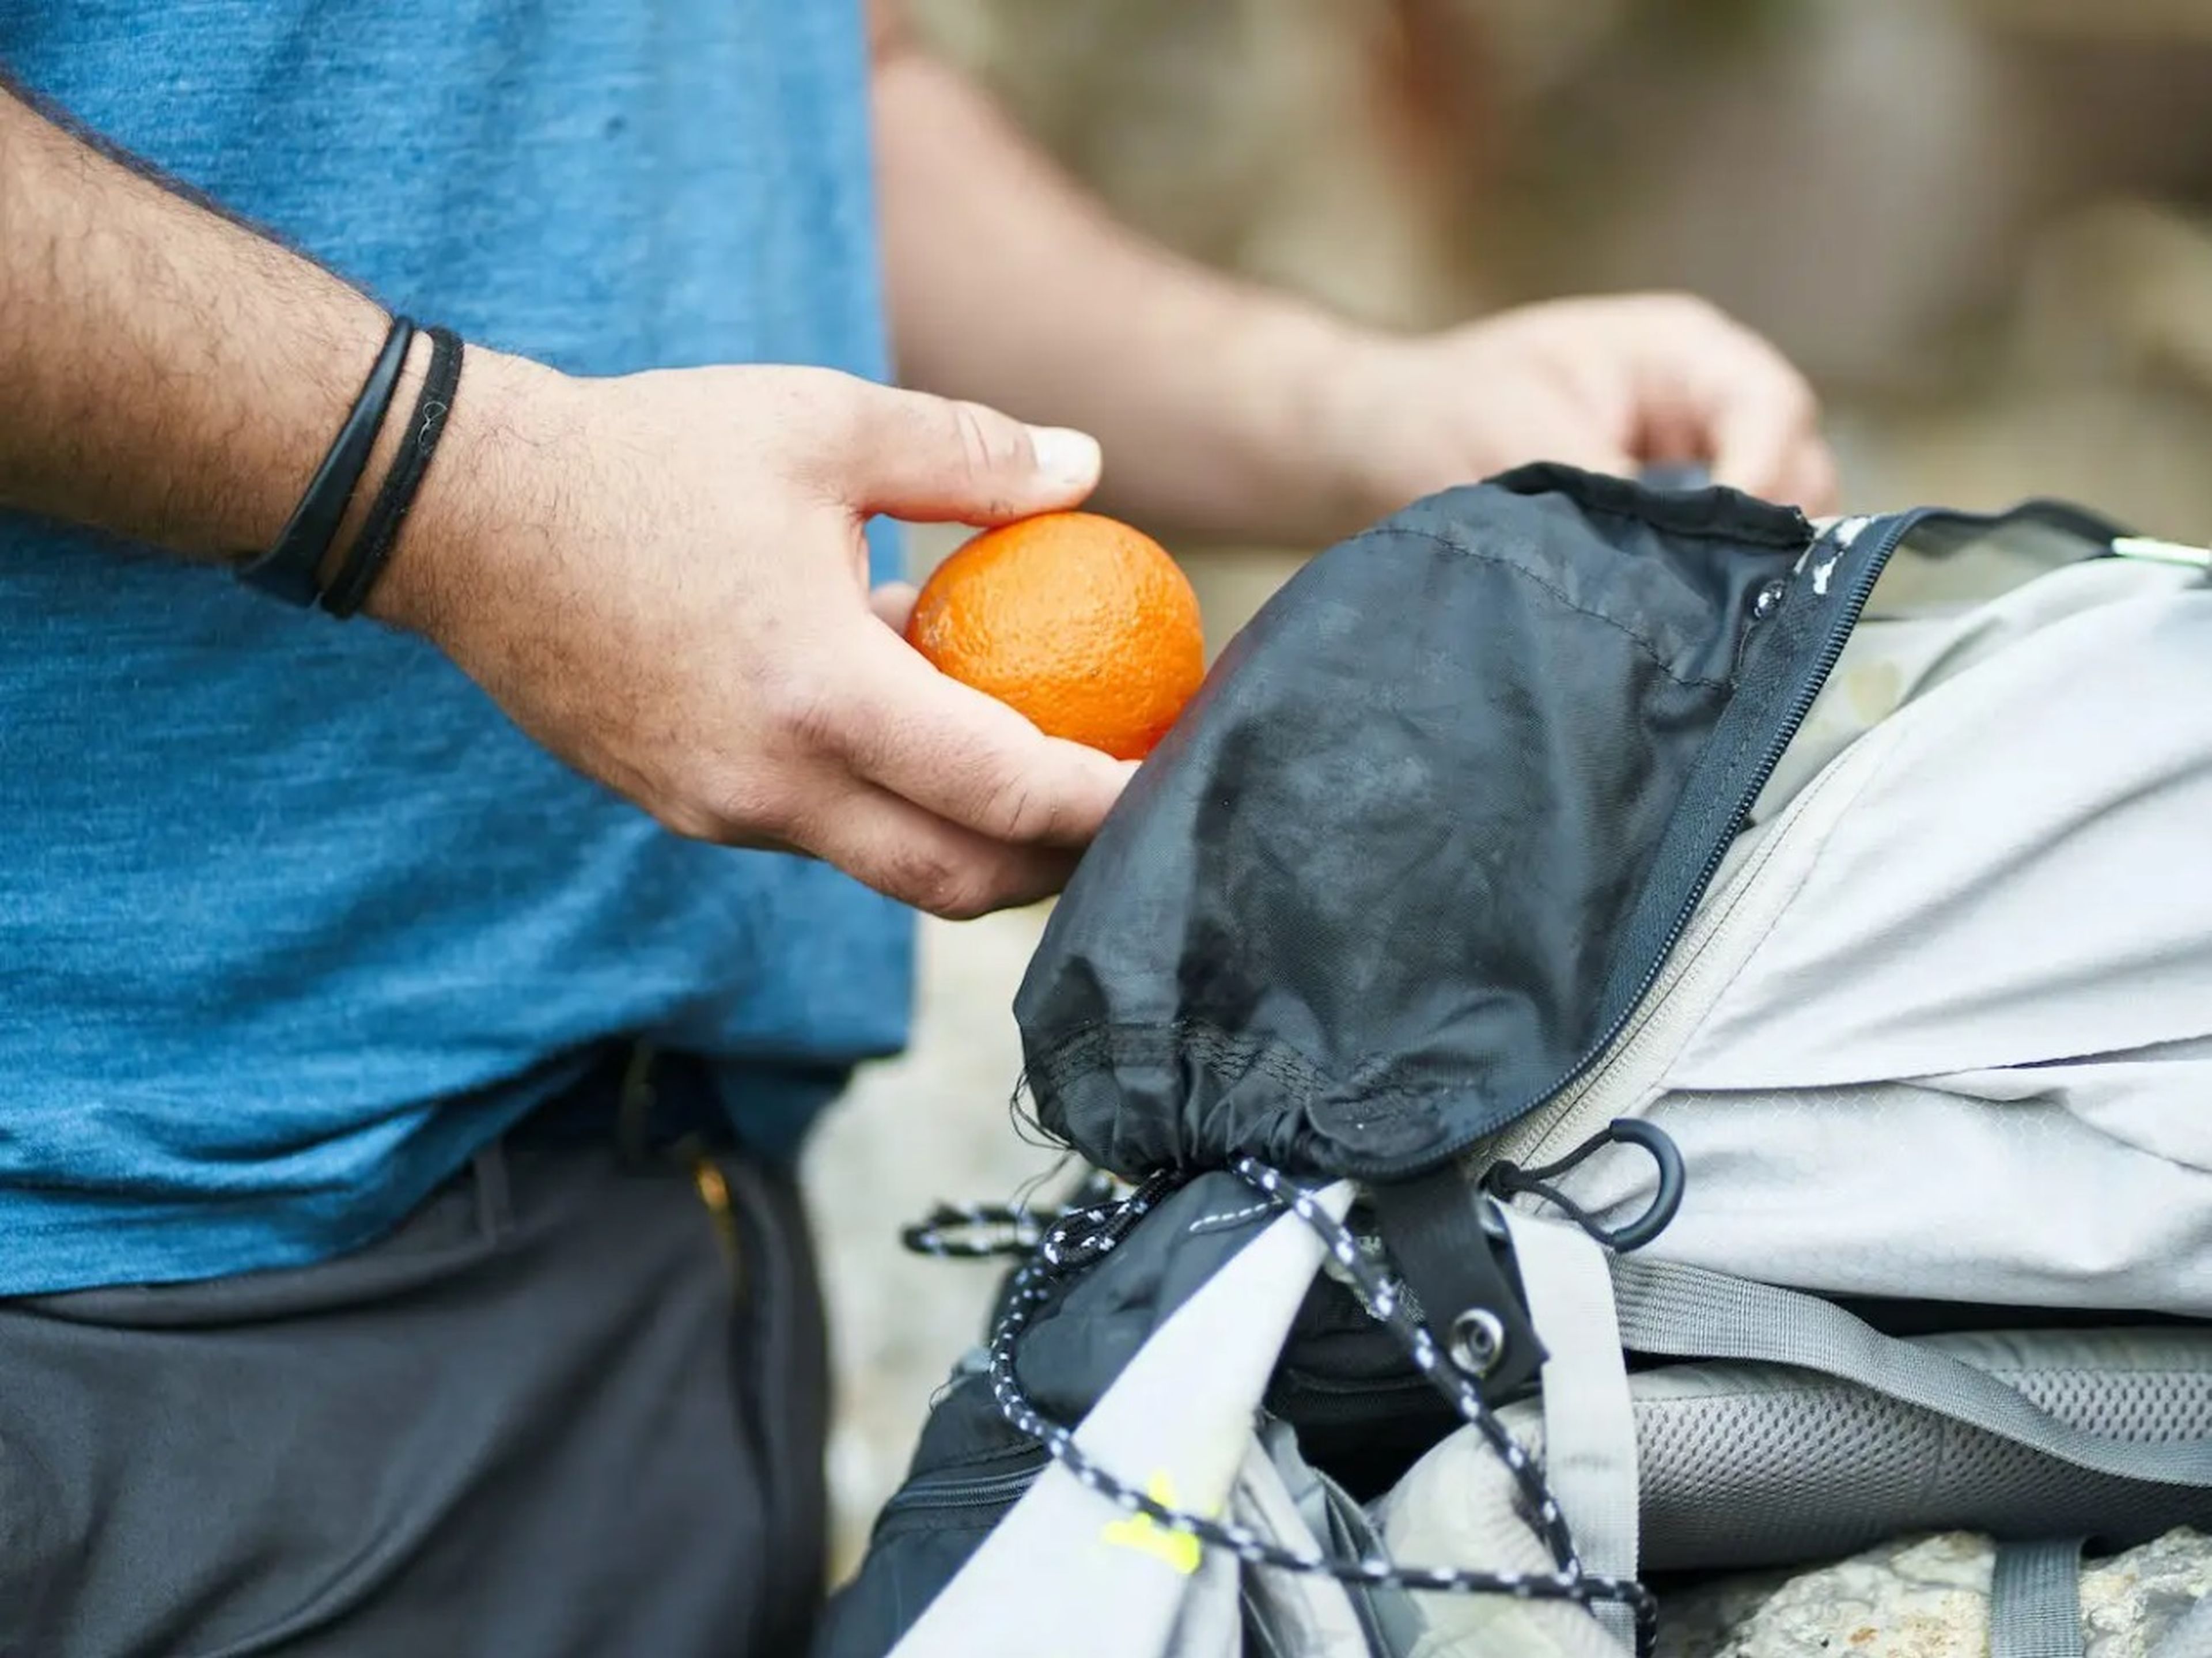 Una persona mete una naranja en su mochila.